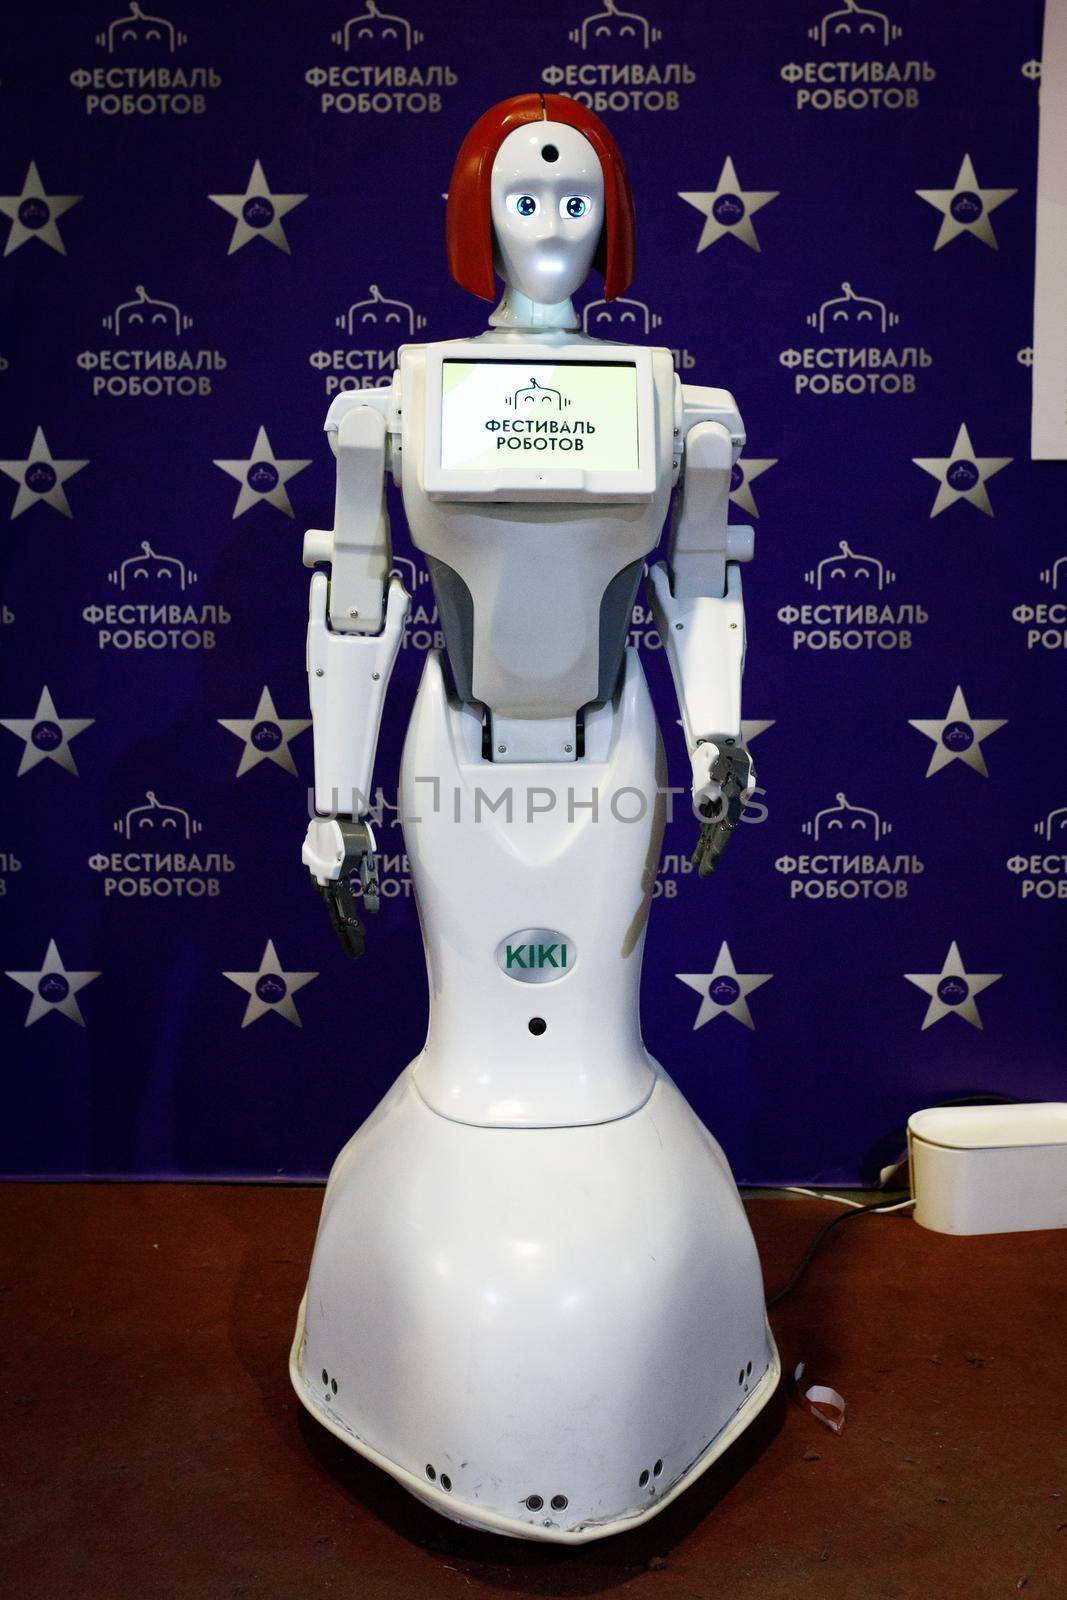 Woman robot KIKI at the robot festival. Almaty, Kazakhstan - February 19, 2022